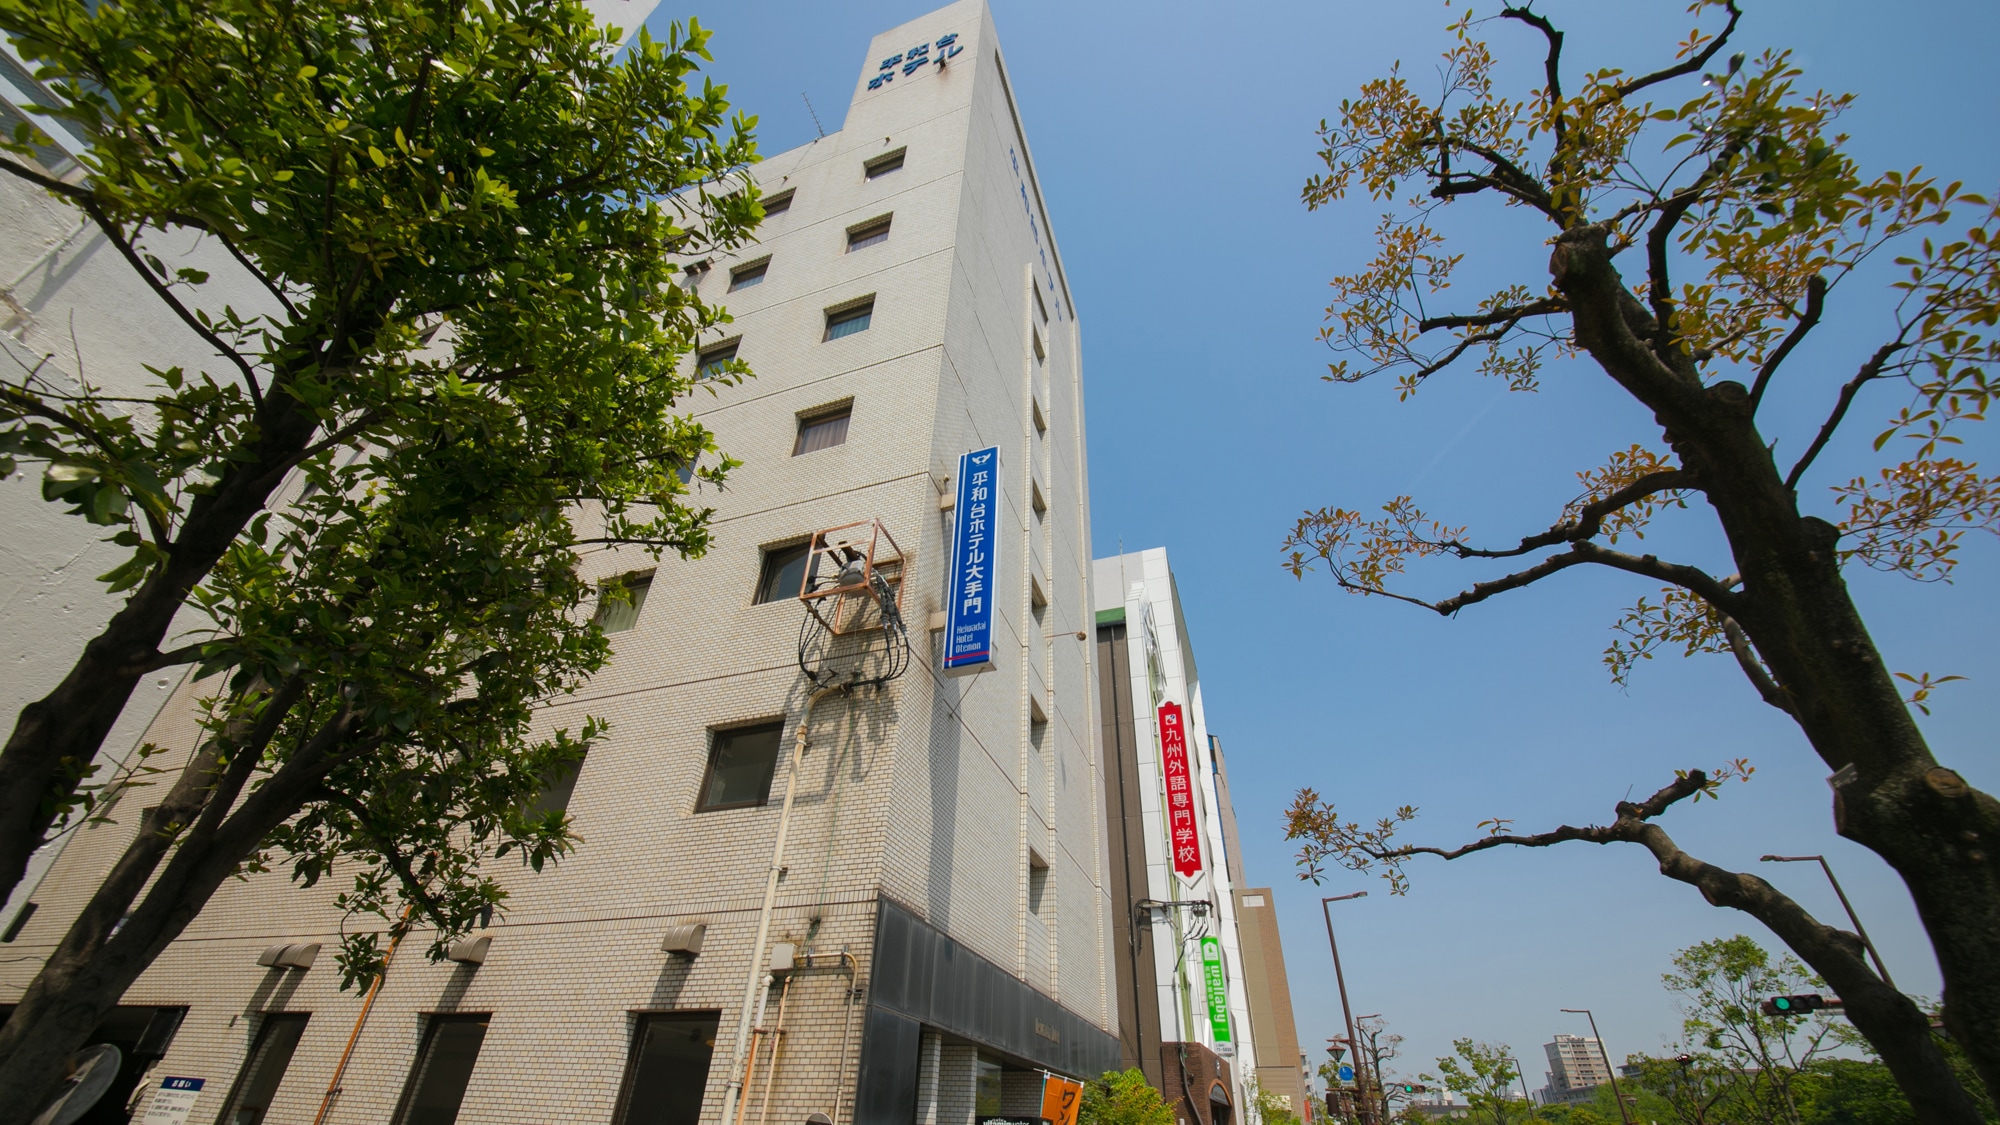 [Heiwadai Hotel Otemon] Berjarak 6 menit berjalan kaki dari Taman Ohori di jalur kereta bawah tanah♪ Cari tanda biru (^O^)